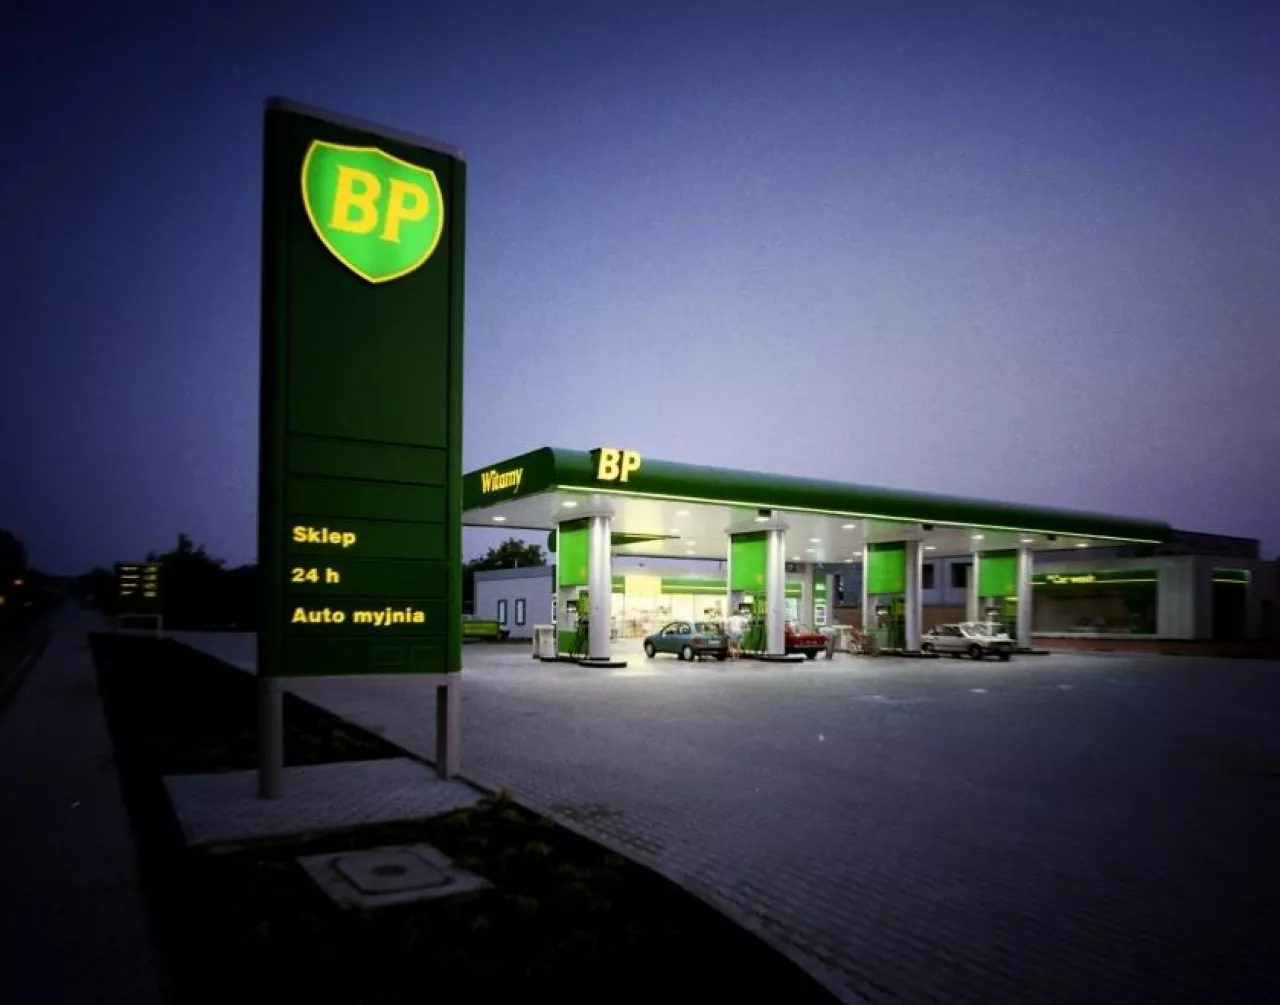 Stacja paliw sieci BP (BP)